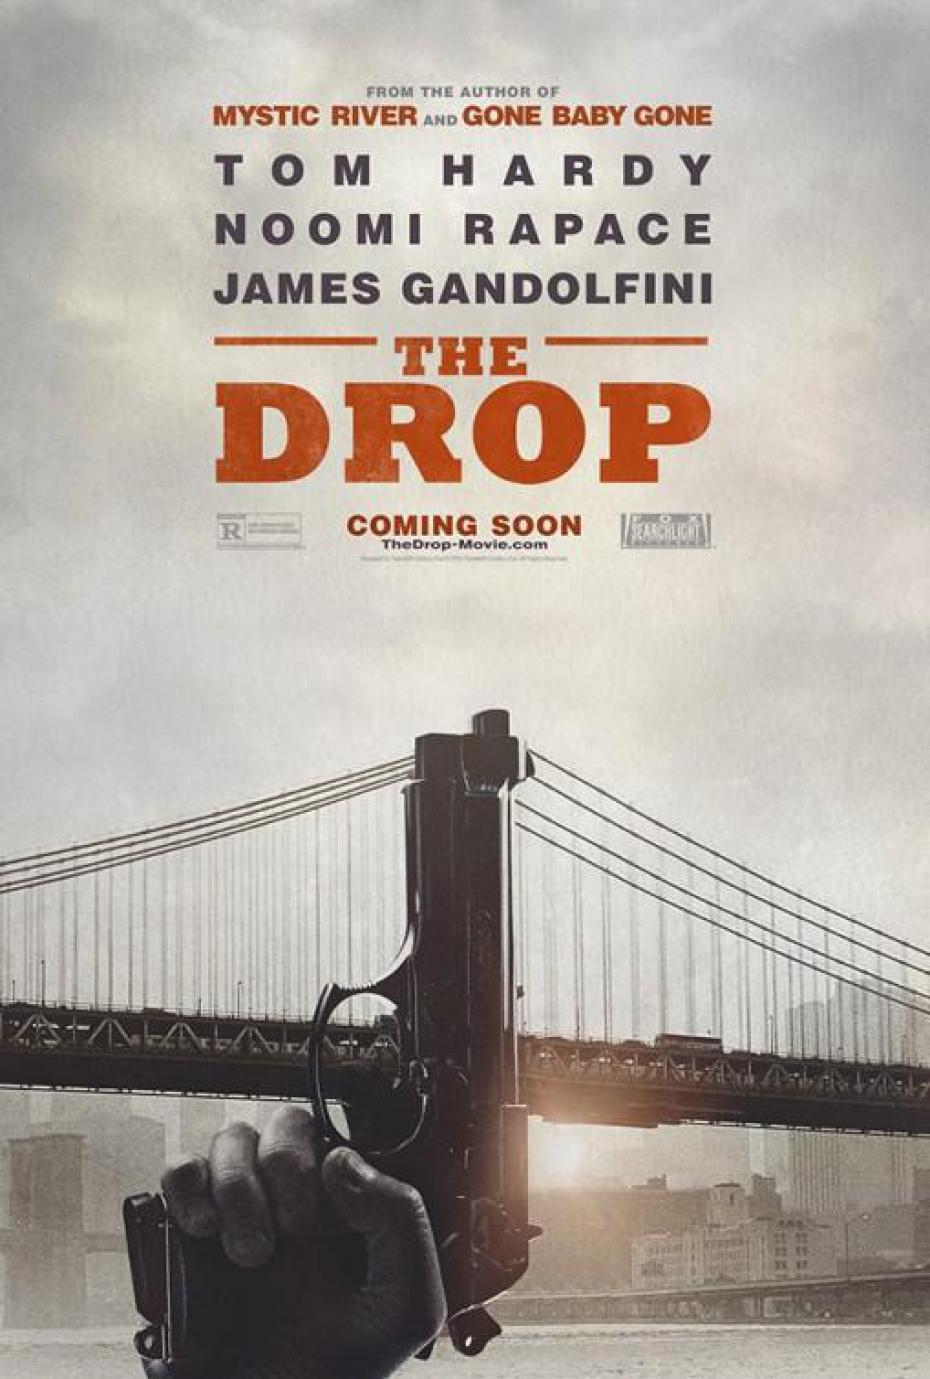 The Drop  / Η συγκάλυψη  (2014)